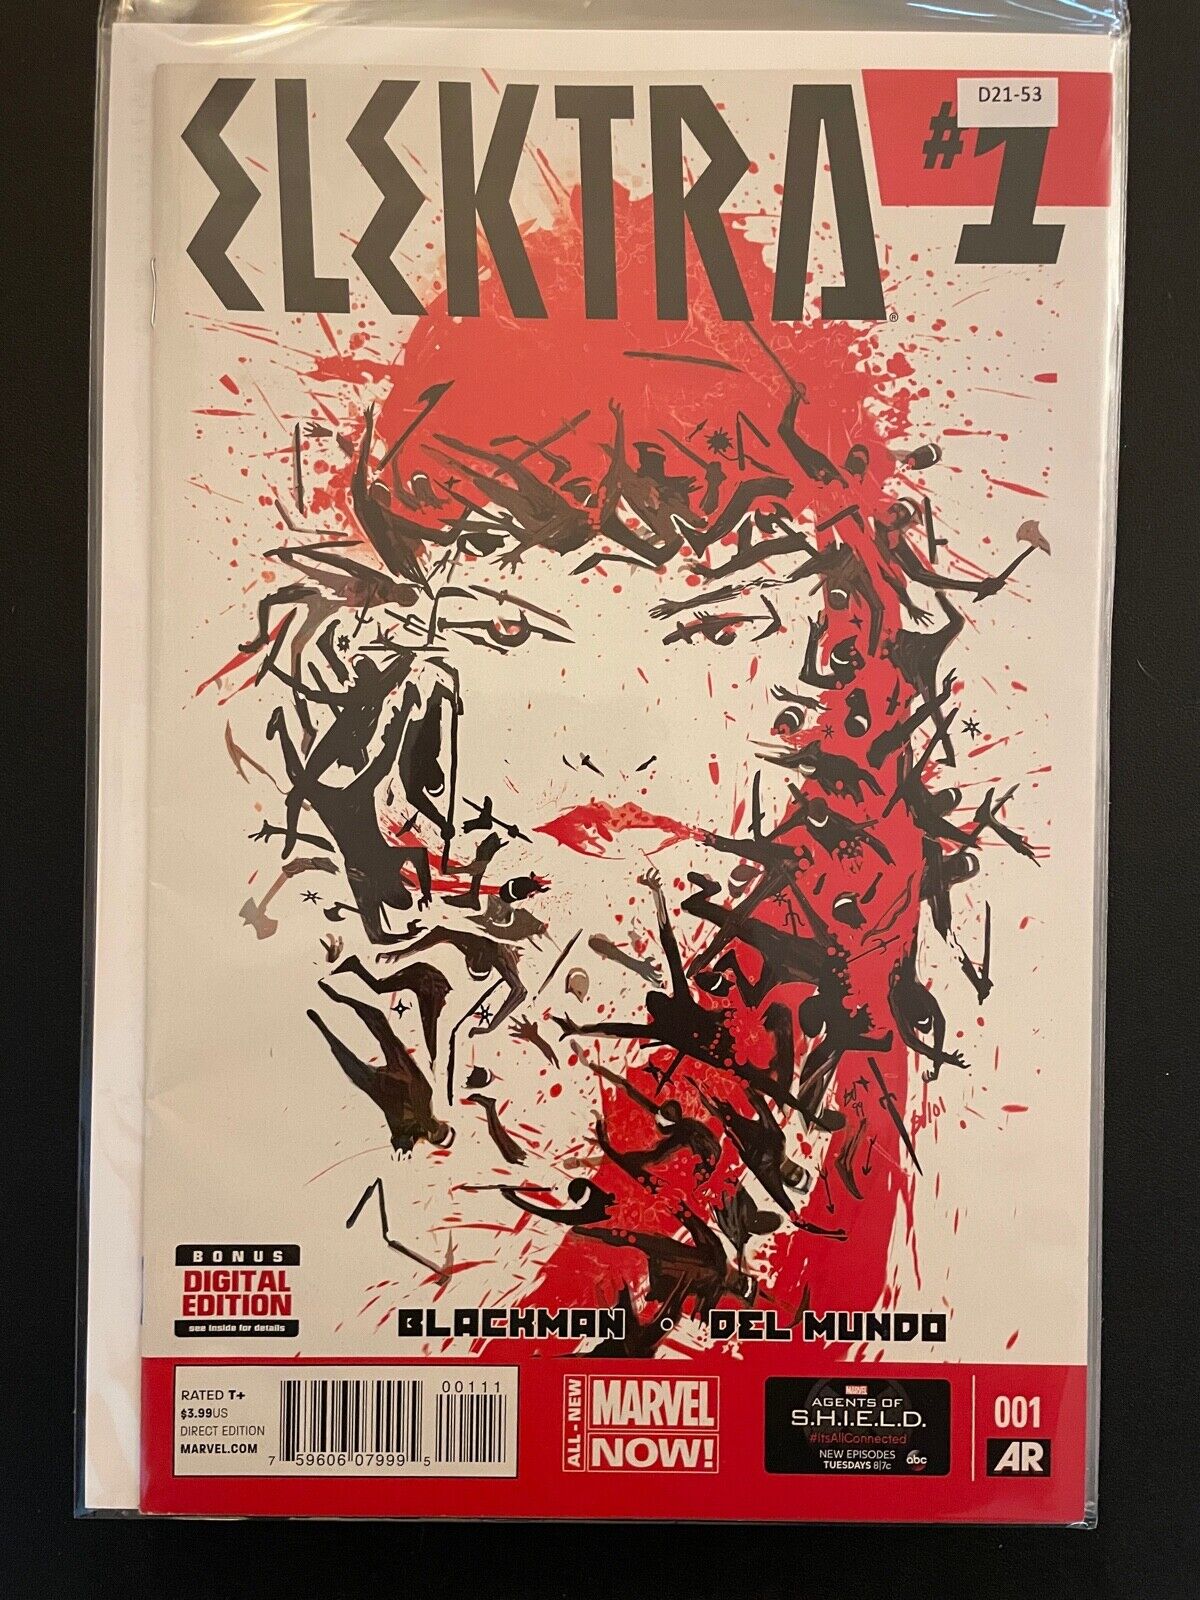 Elektra vol.3 #1 2014 High Grade 8.0 Marvel Comic Book D21-53